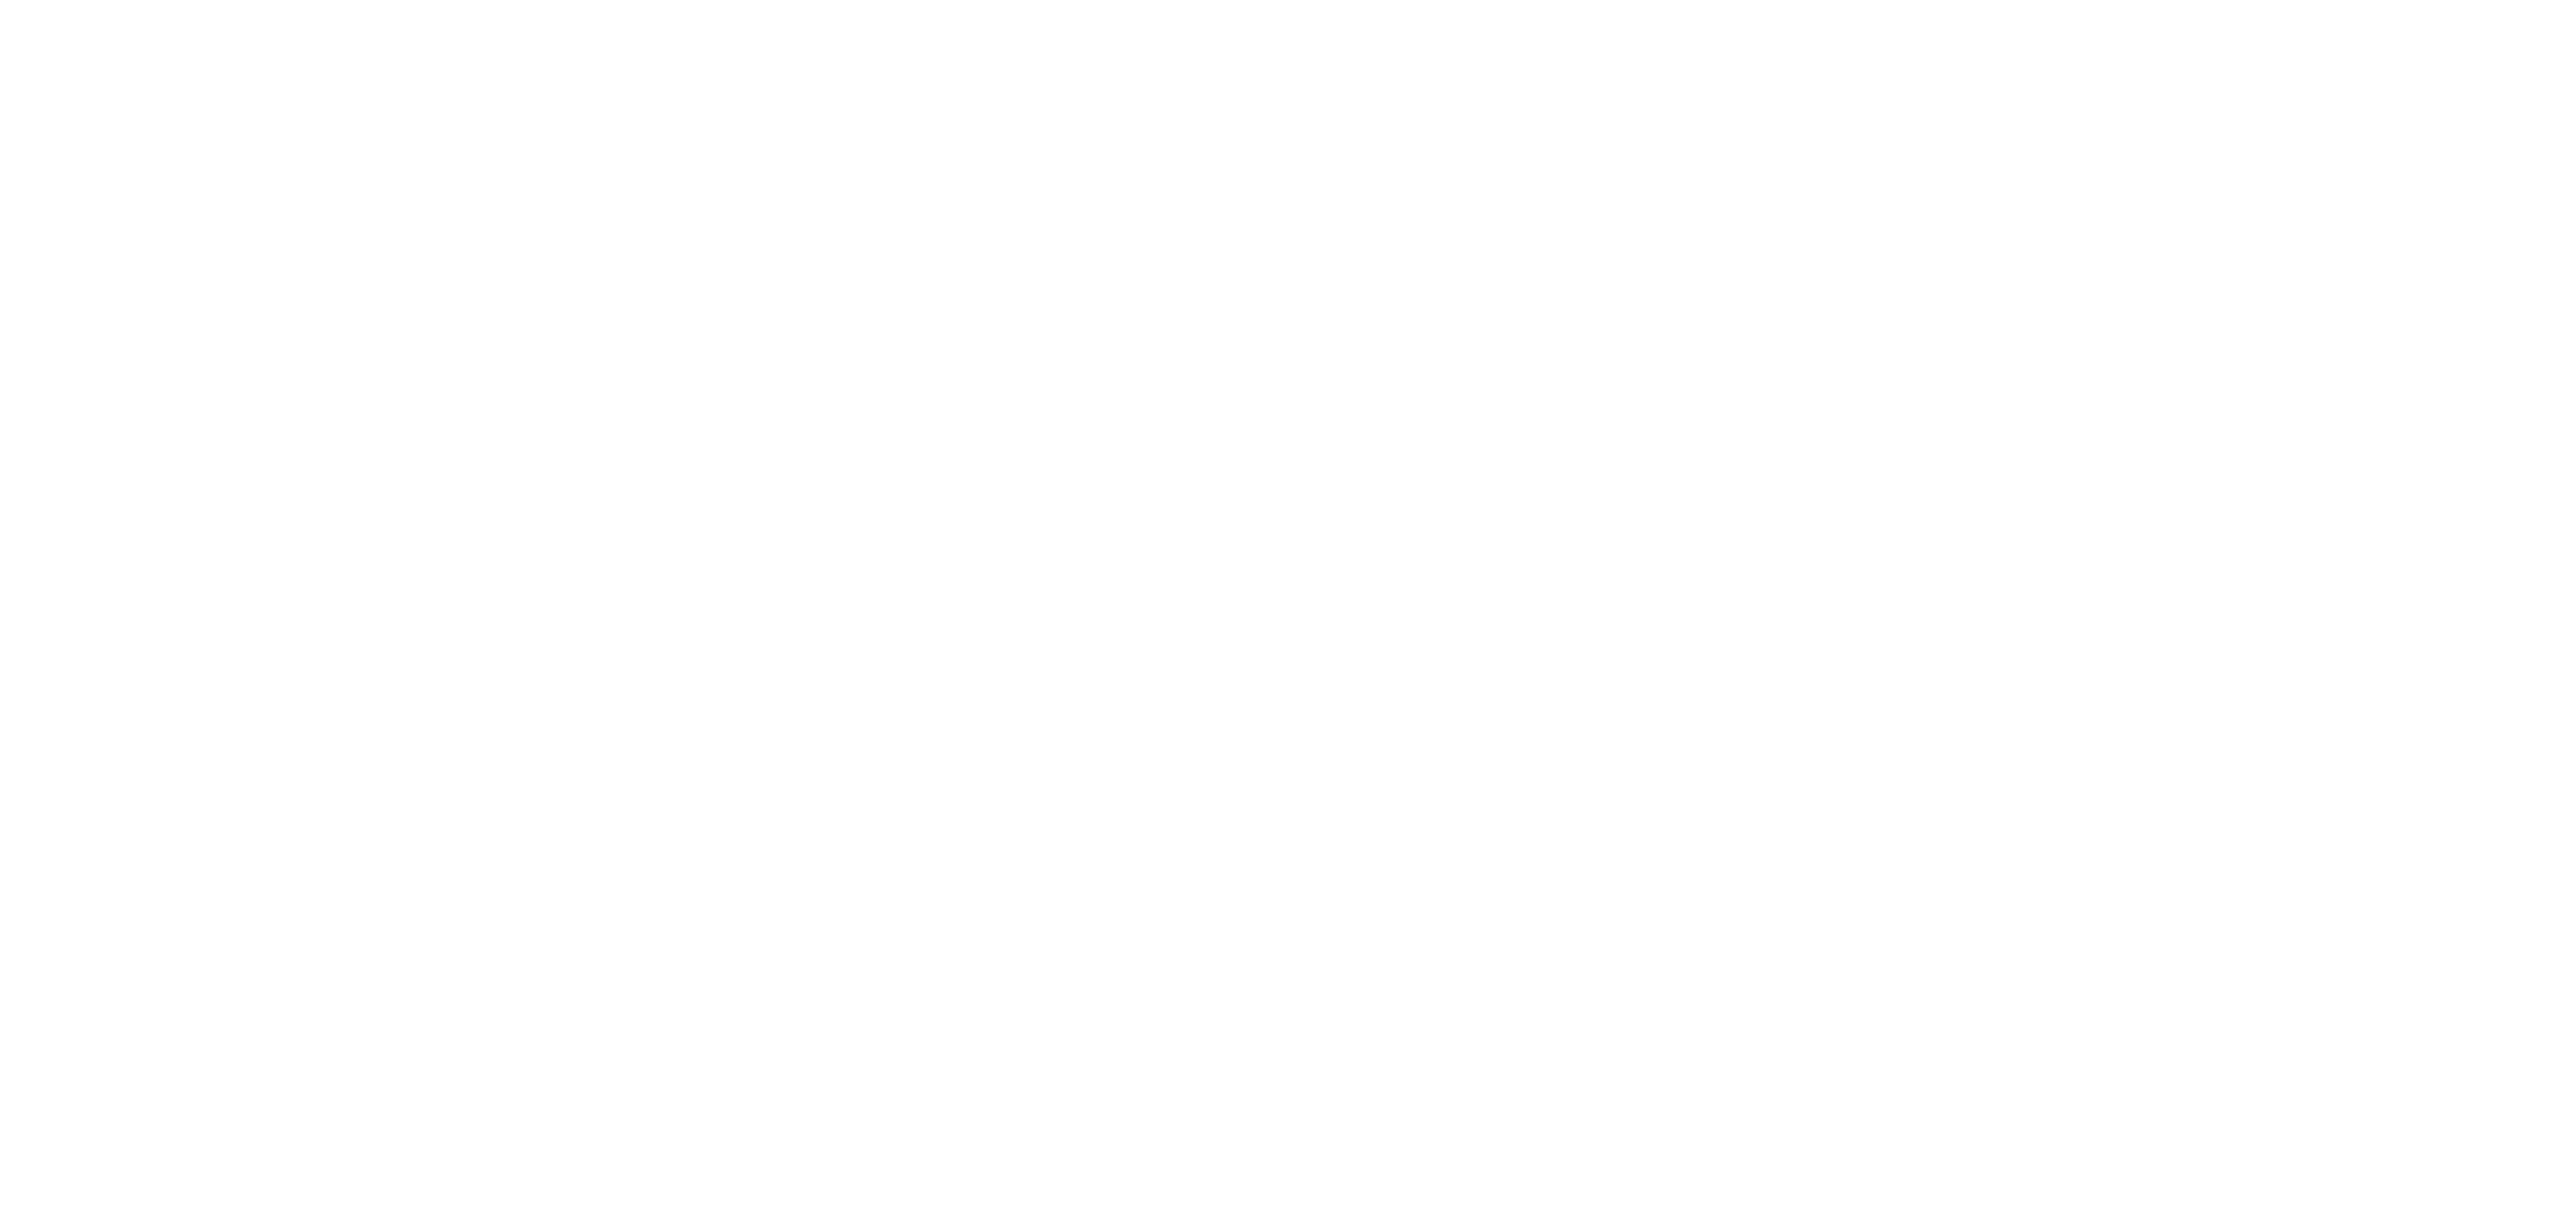 Jack's